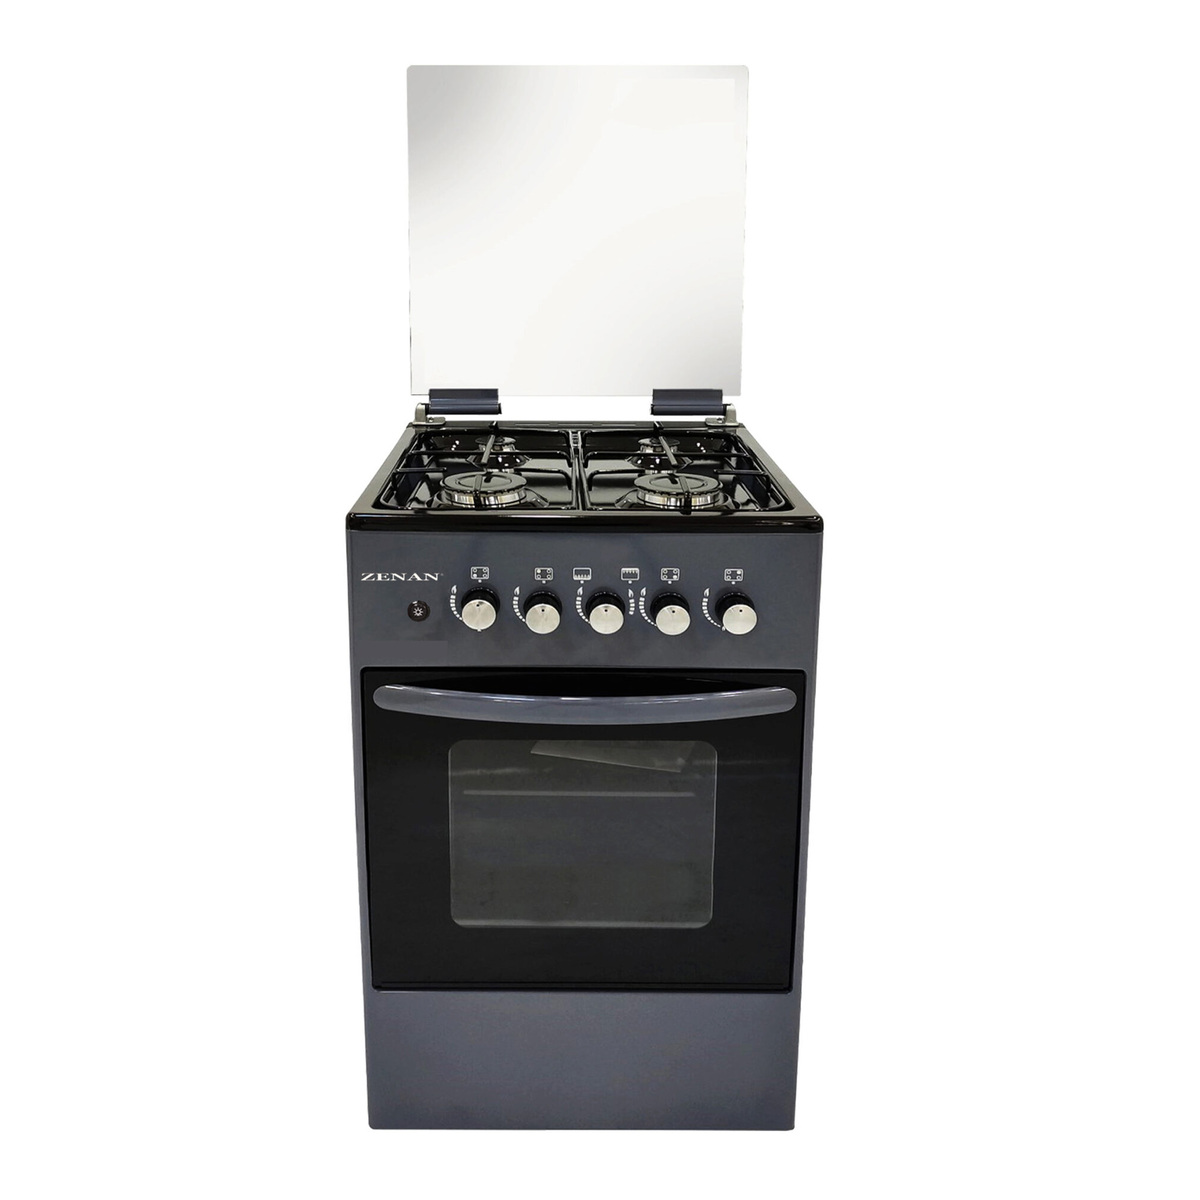 Zenan 4 Burner Gas Cooking Range, 50 x 50 cm, Grey, ZGC-50X50FG